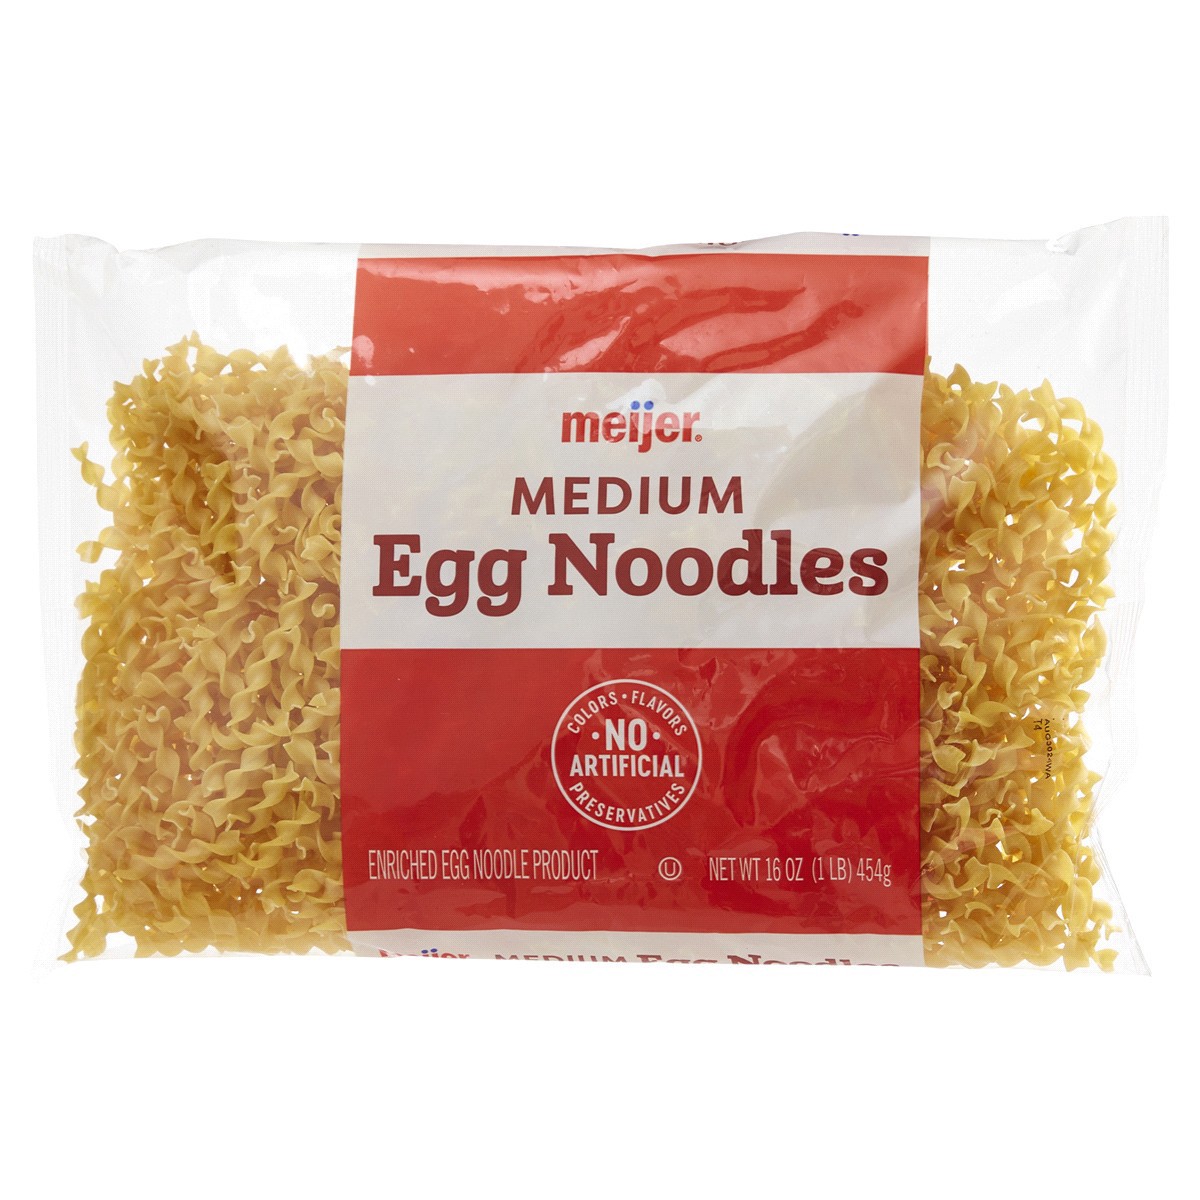 slide 9 of 29, Meijer Medium Egg Noodles, 16 oz